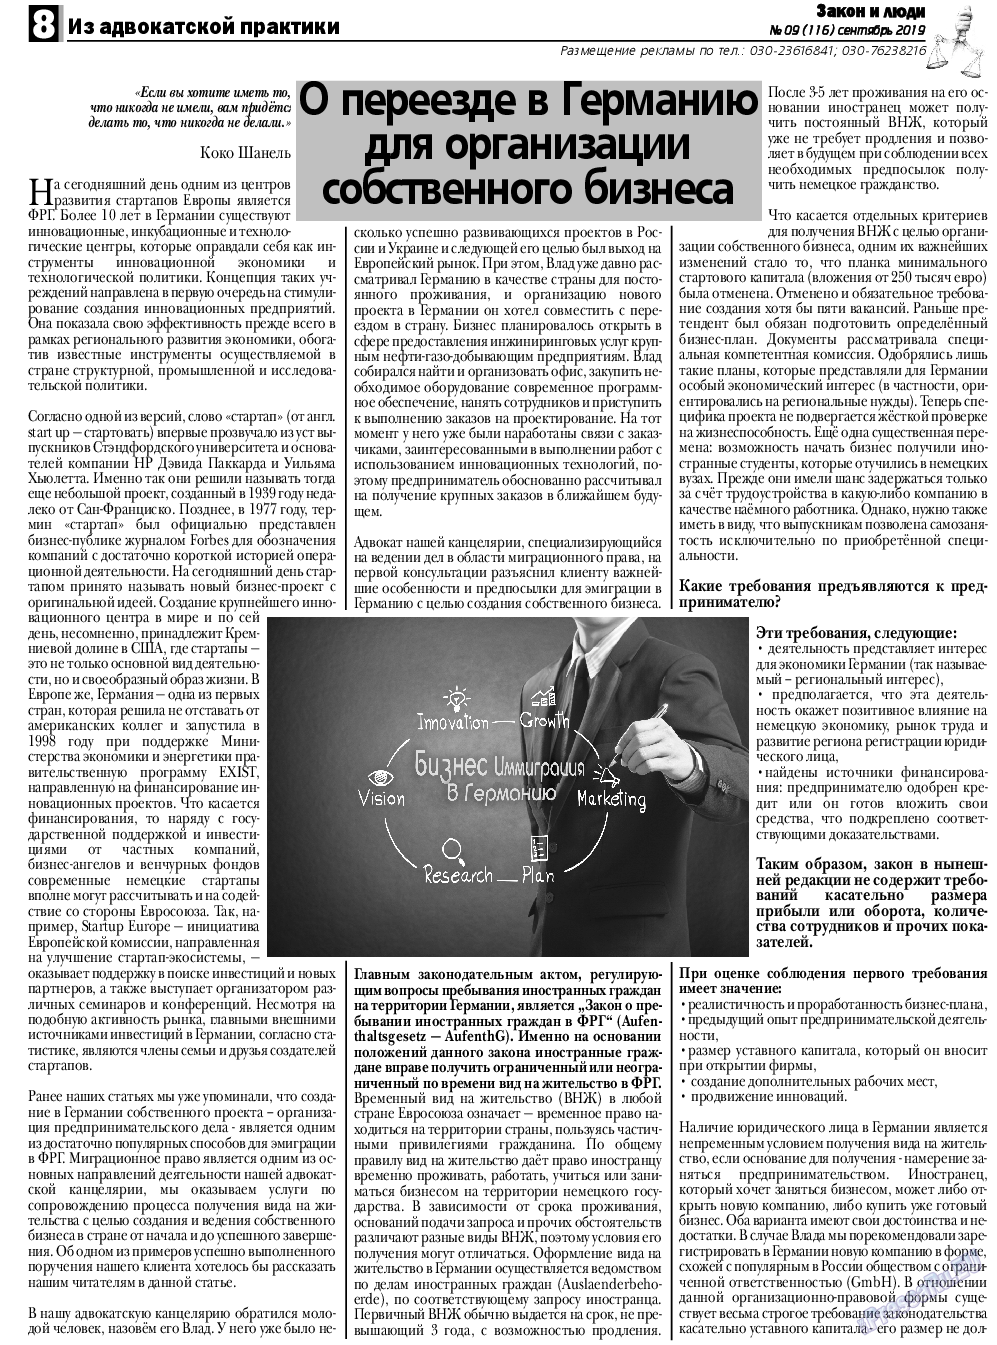 Закон и люди, газета. 2019 №9 стр.8